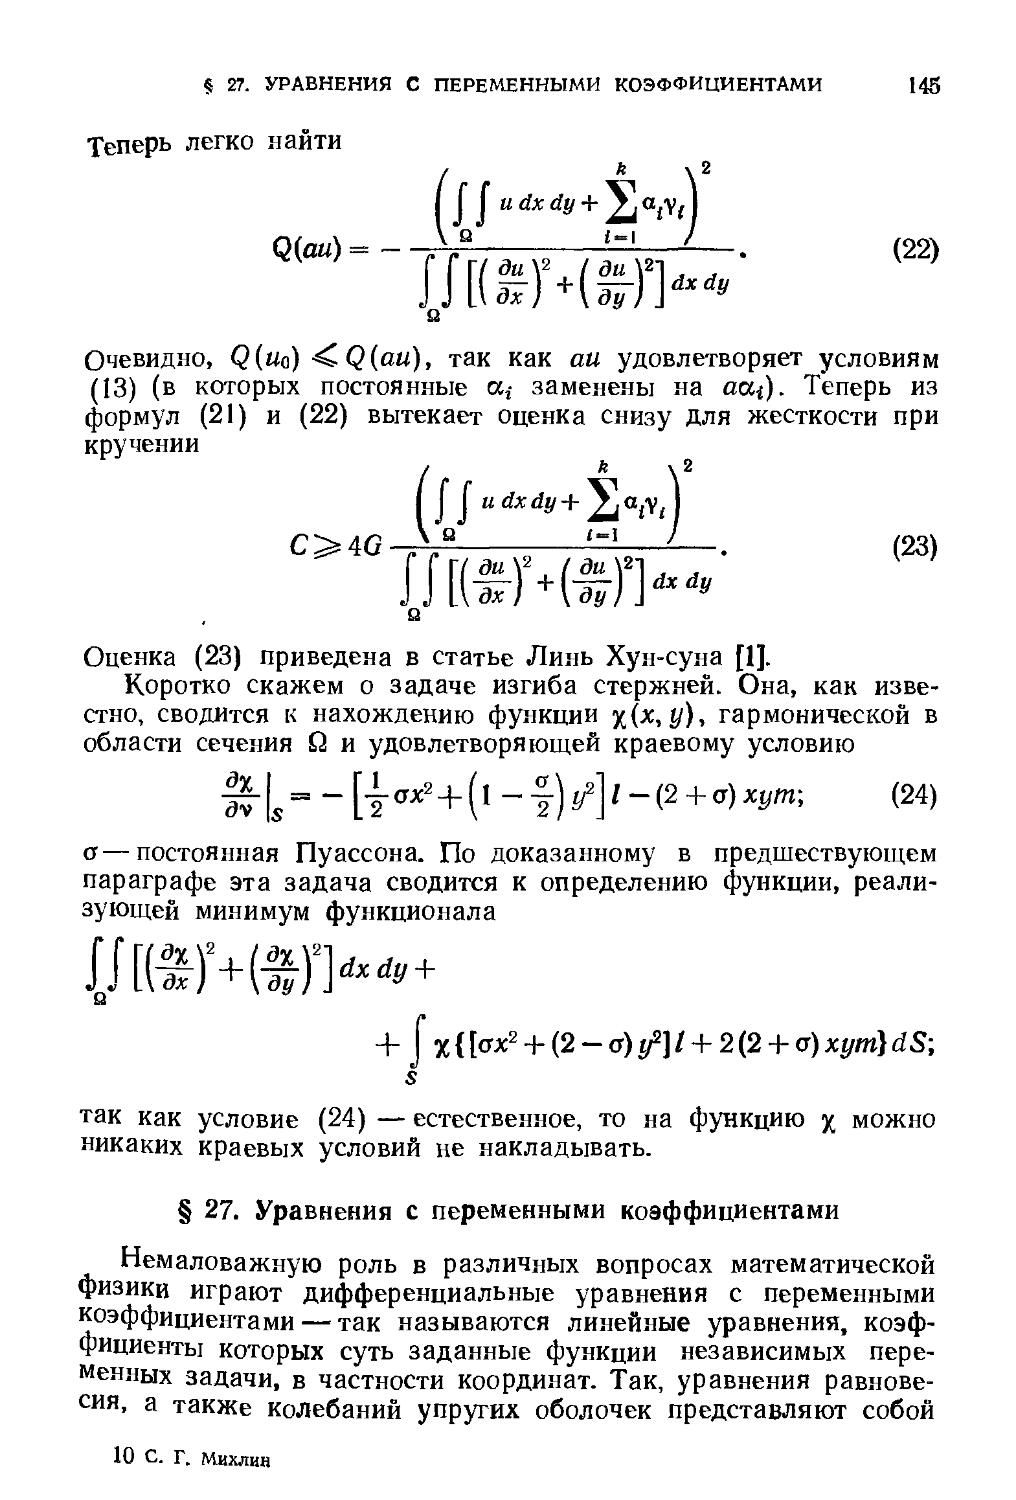 § 27. Уравнения с переменными коэффициентами